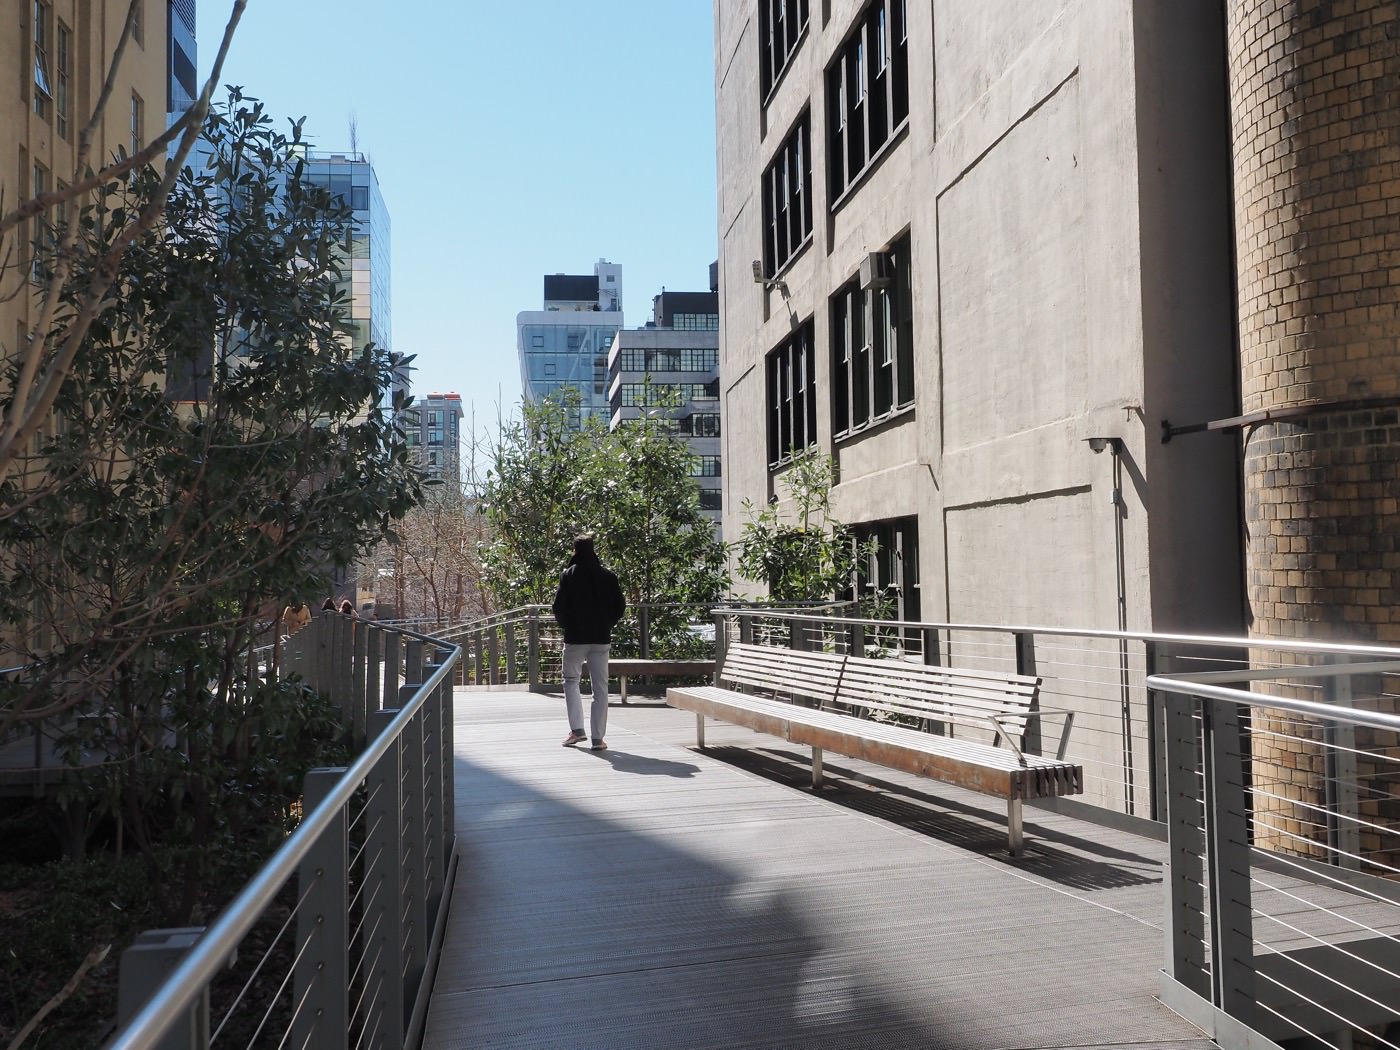 紐約景點 曼哈頓 The High Line 廢棄鐵道再生計畫 高架公園 - 一口冒險 Bitesized Adventure